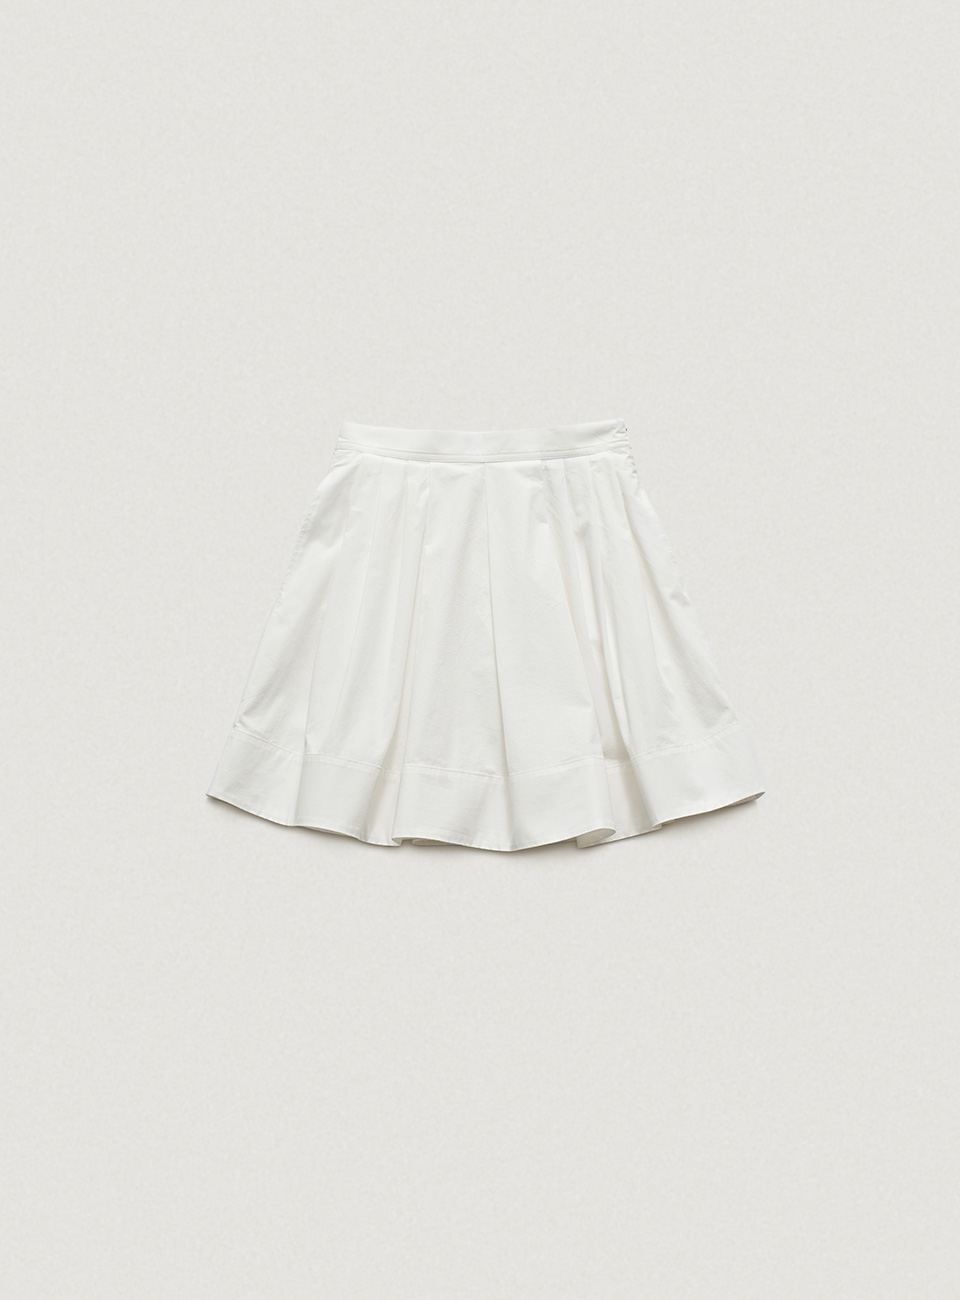 Magnolia Pleated Skirt [4월 초 순차 배송]